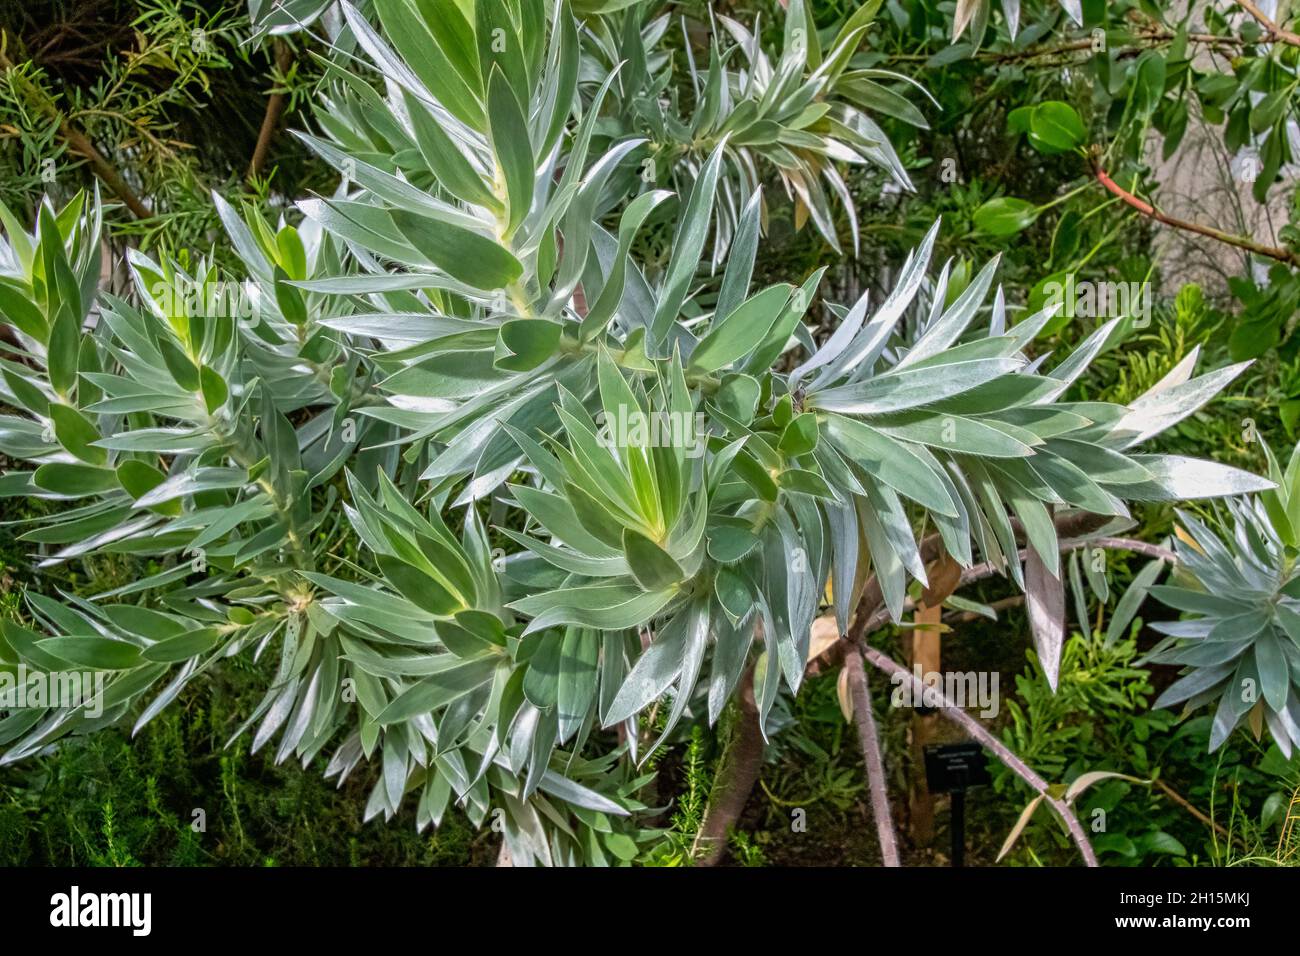 Le Leucadendron argenteum est une espèce végétale en voie de disparition de la famille des Proteaceae, souvent appelée arbre argenté Banque D'Images